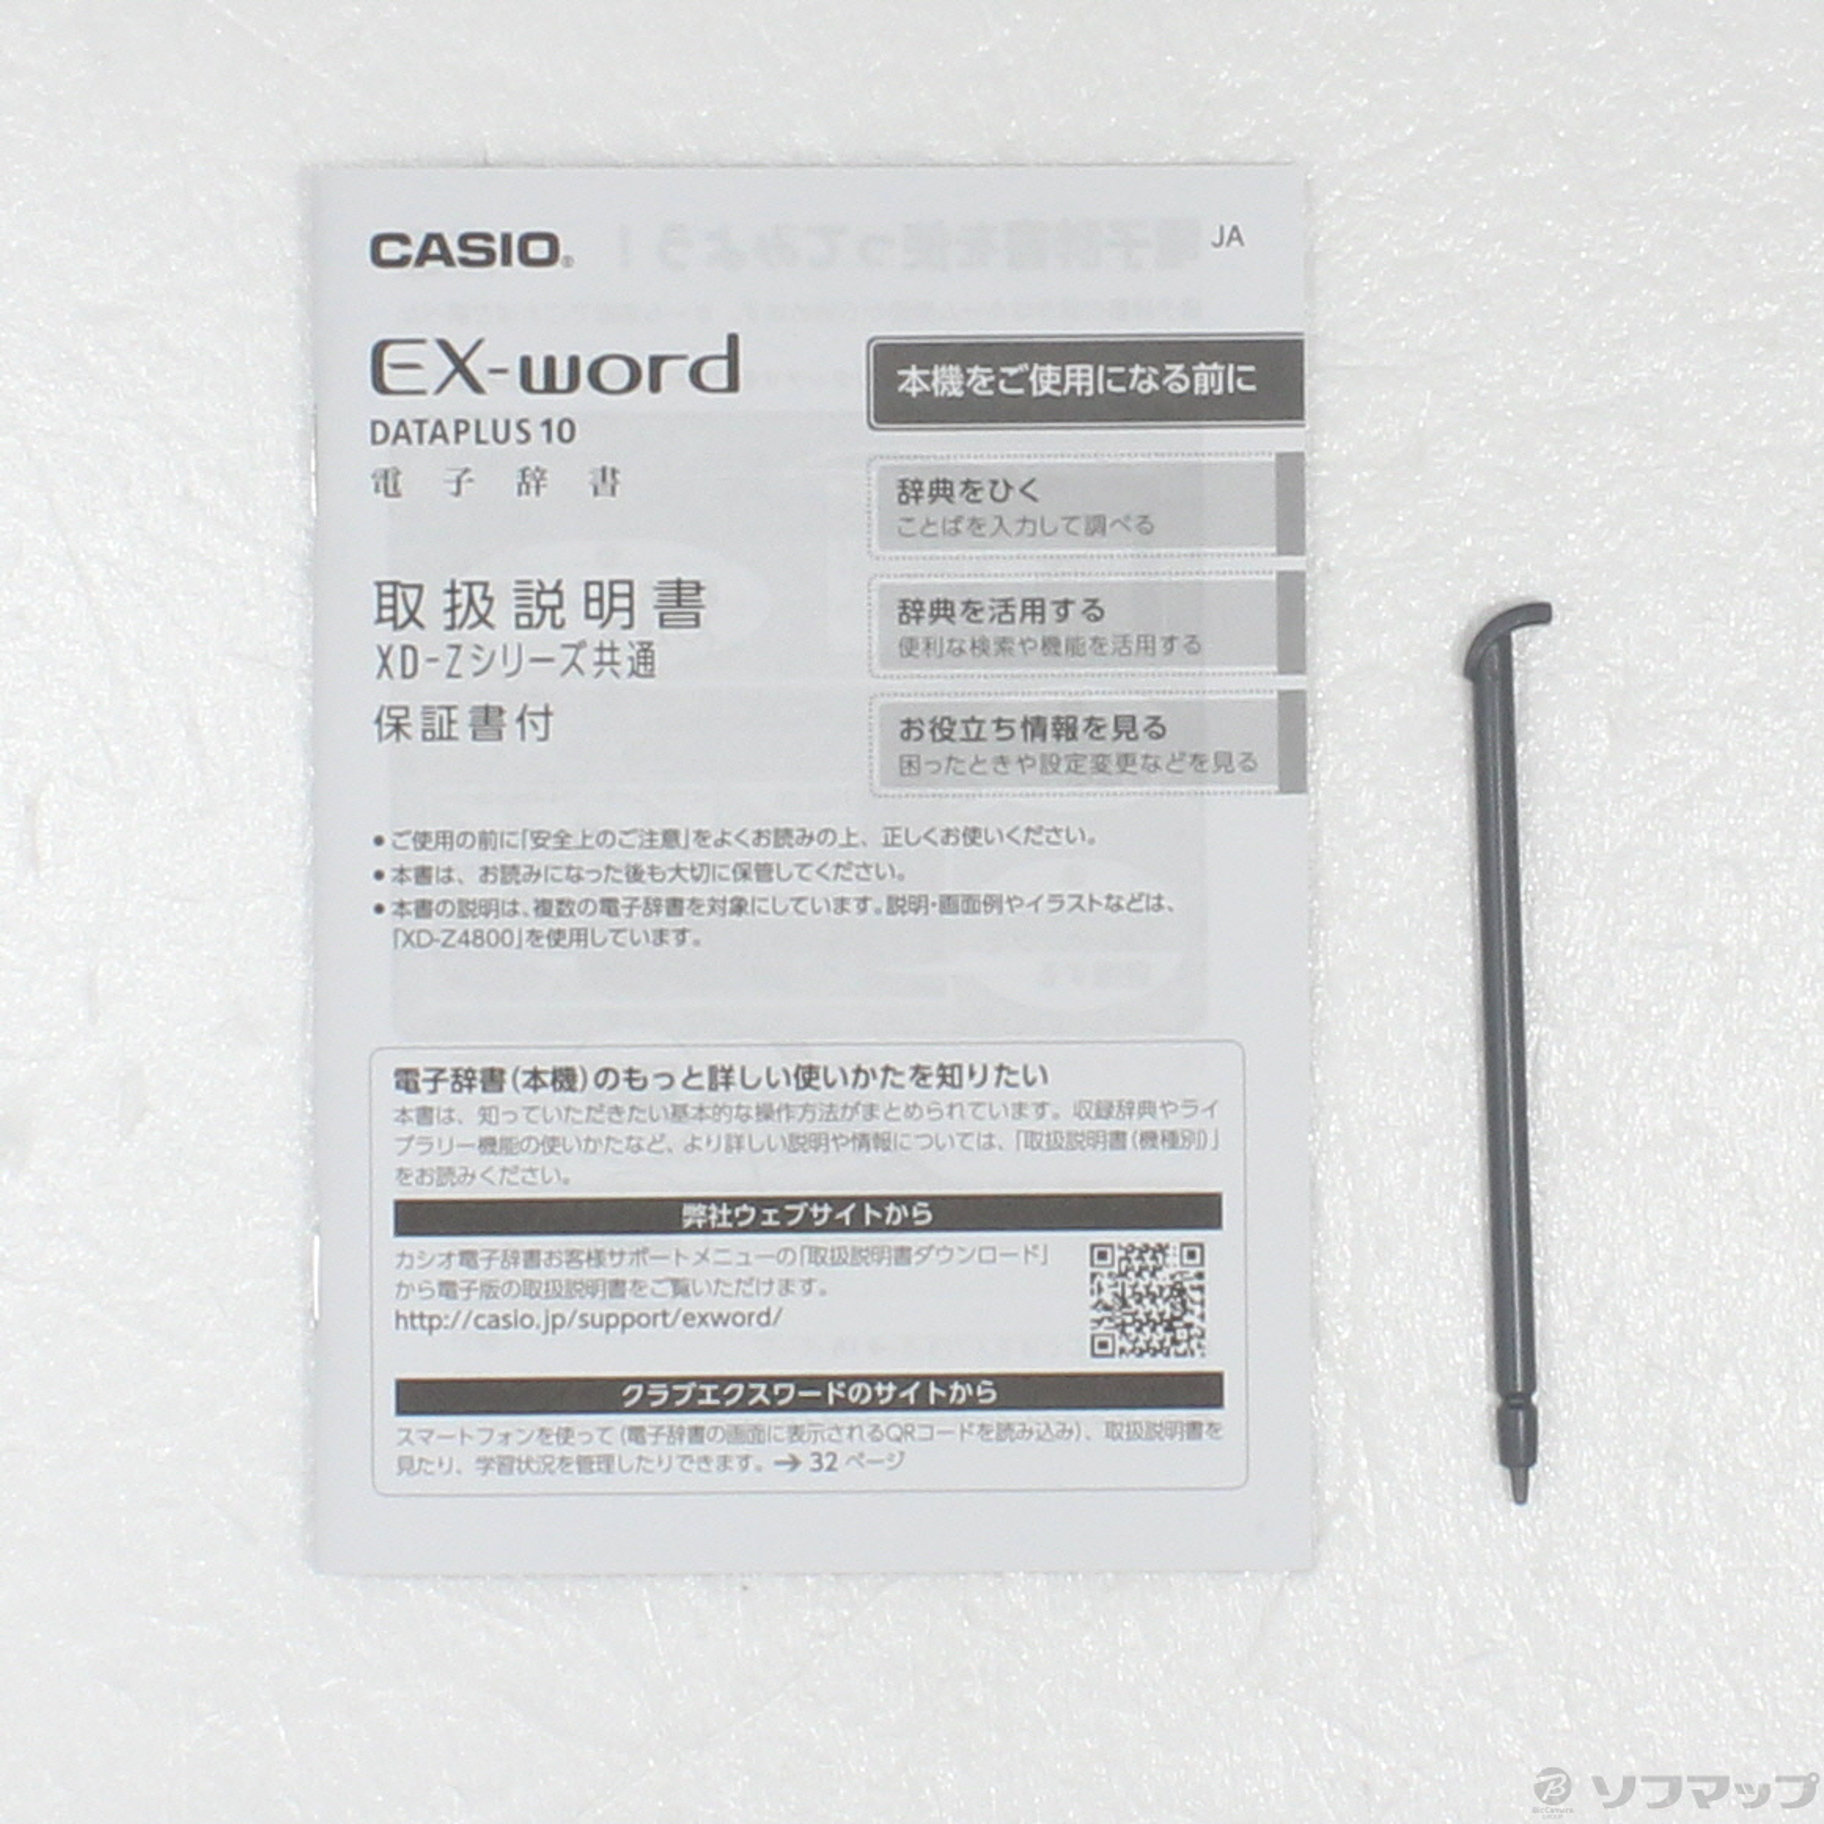 CASIO XD-Z9800WE